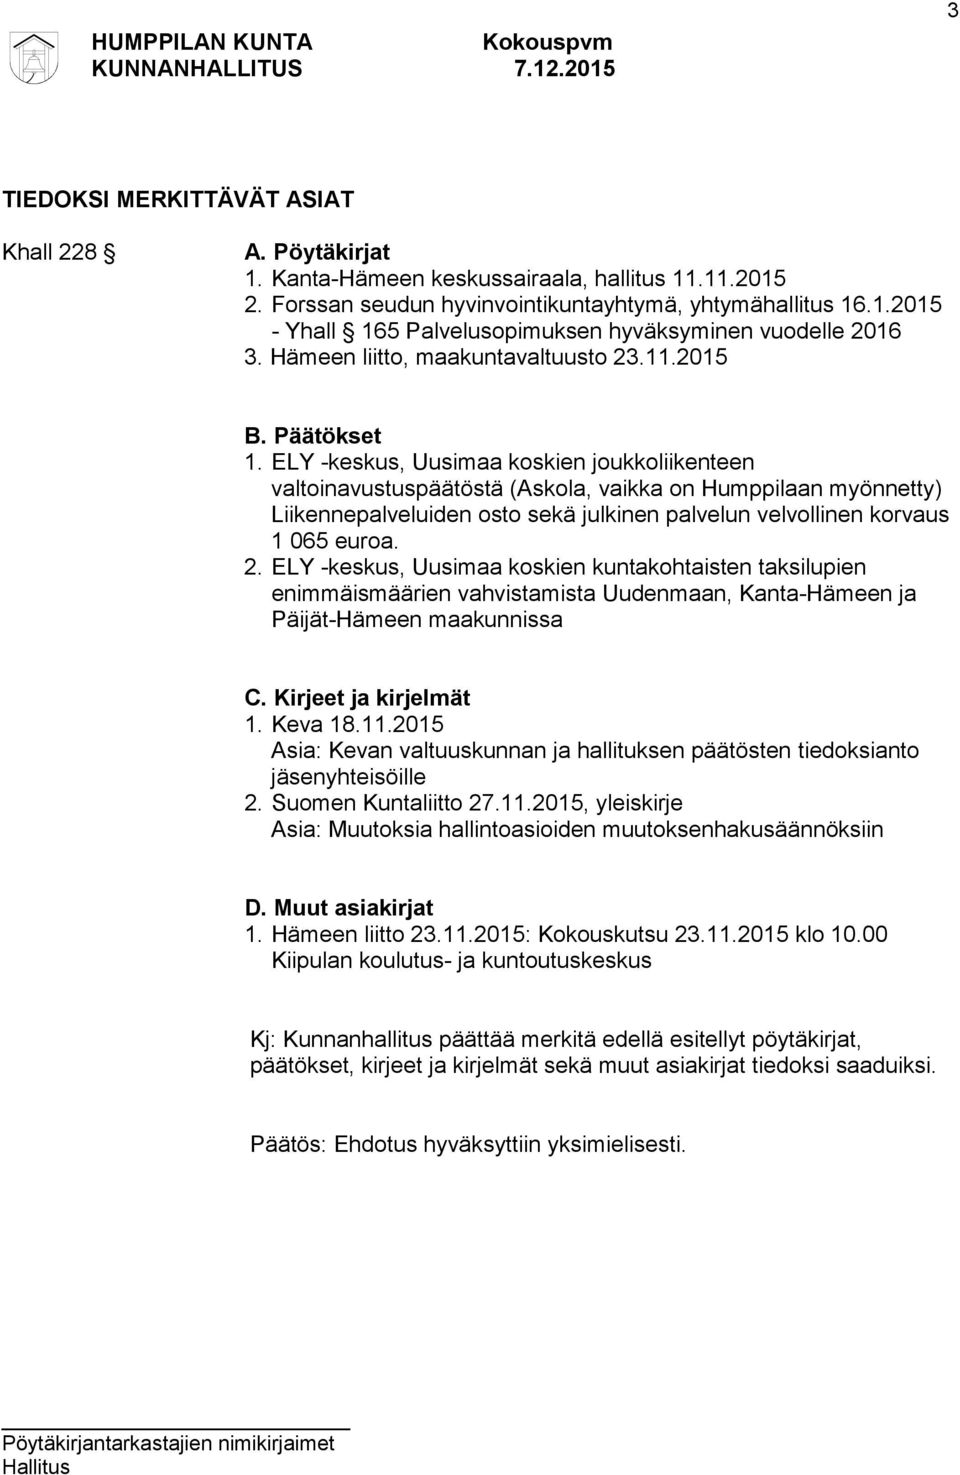 ELY -keskus, Uusimaa koskien joukkoliikenteen valtoinavustuspäätöstä (Askola, vaikka on Humppilaan myönnetty) Liikennepalveluiden osto sekä julkinen palvelun velvollinen korvaus 1 065 euroa. 2.